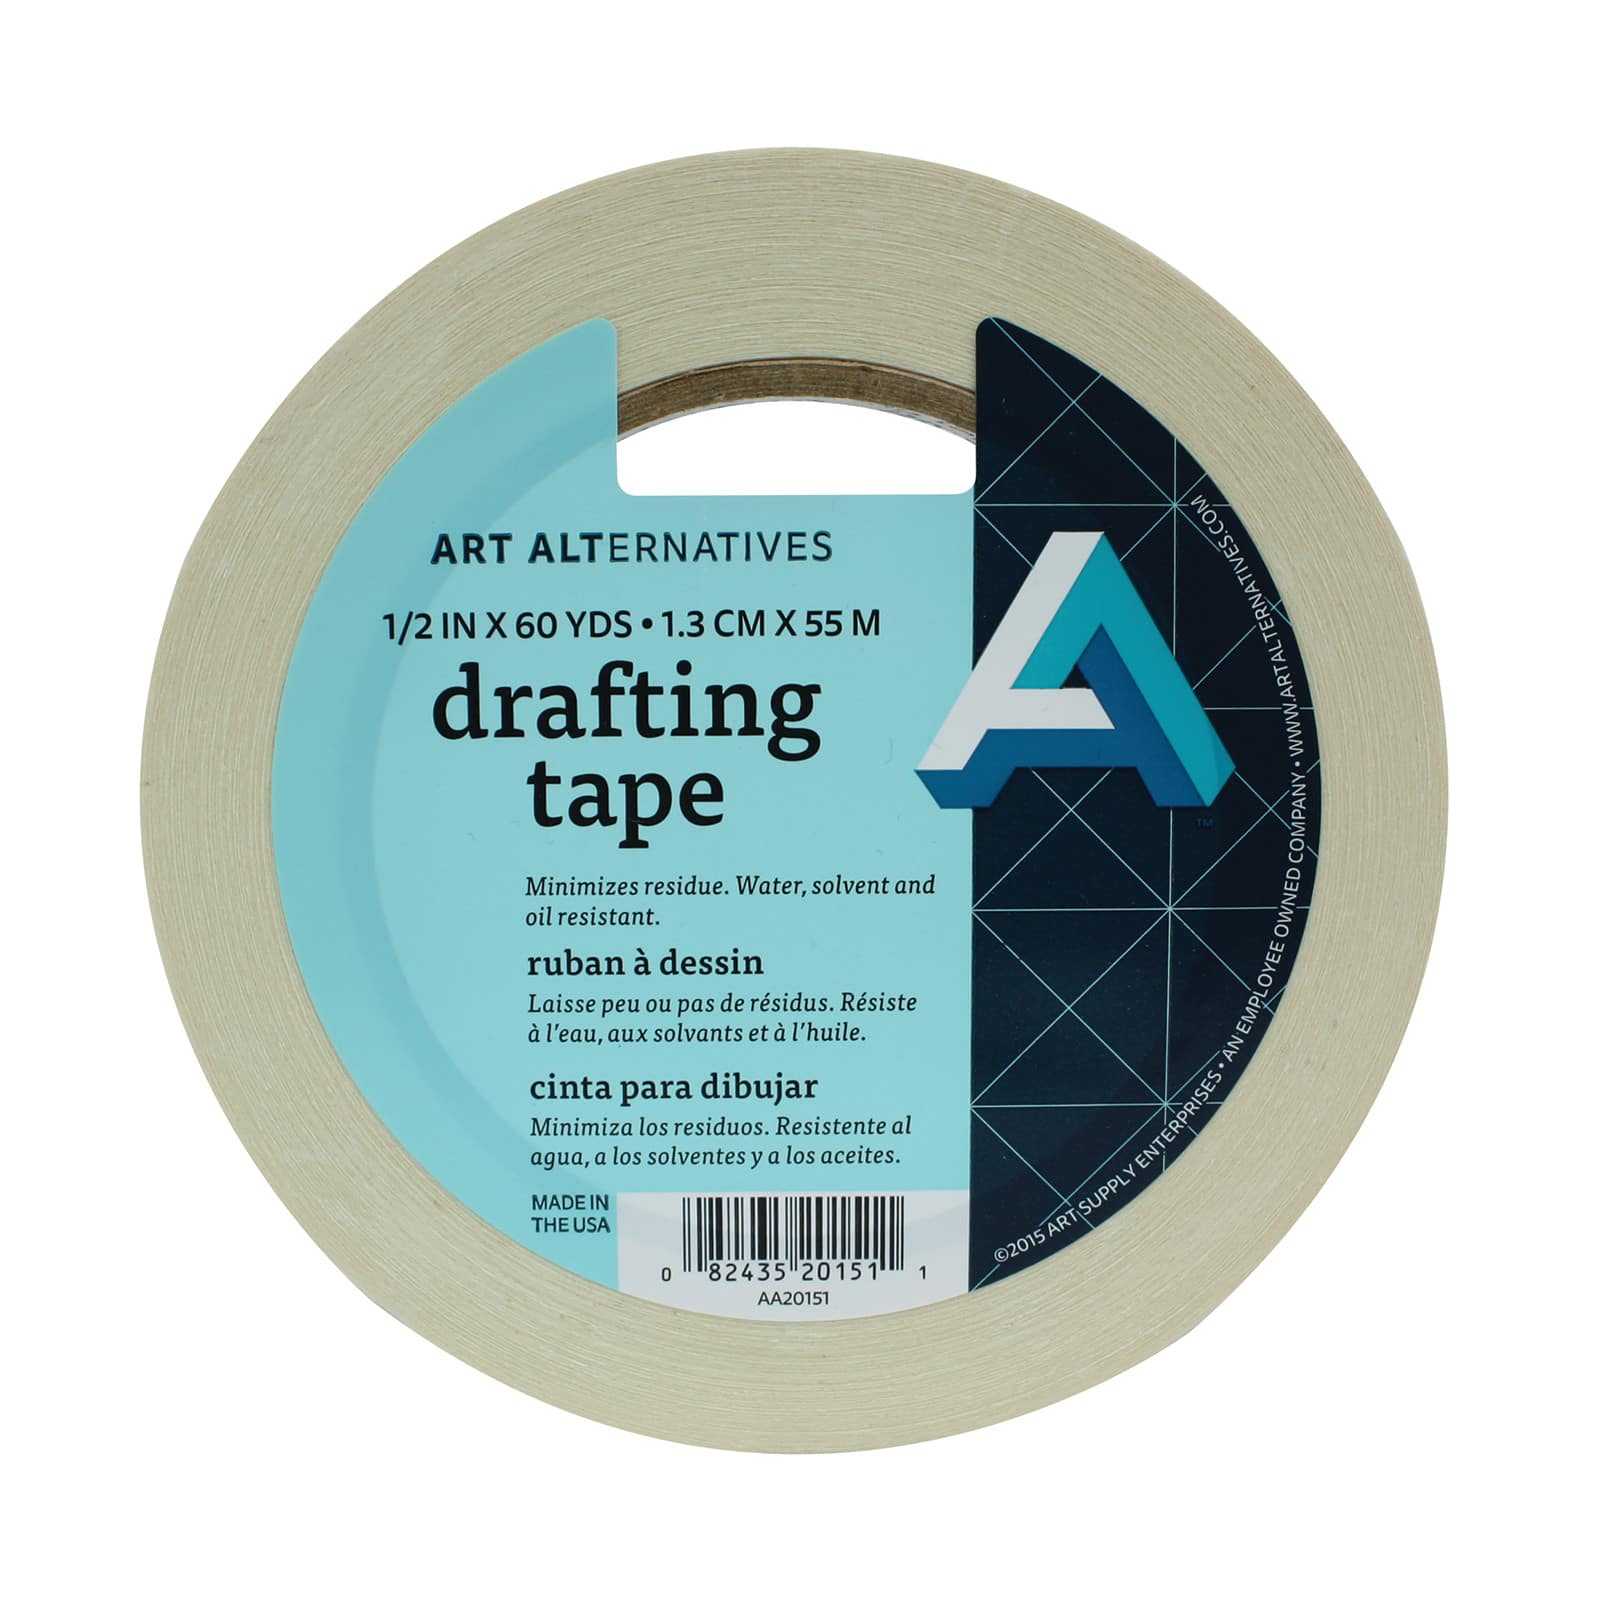 24 Pack: Art Alternatives Drafting Tape